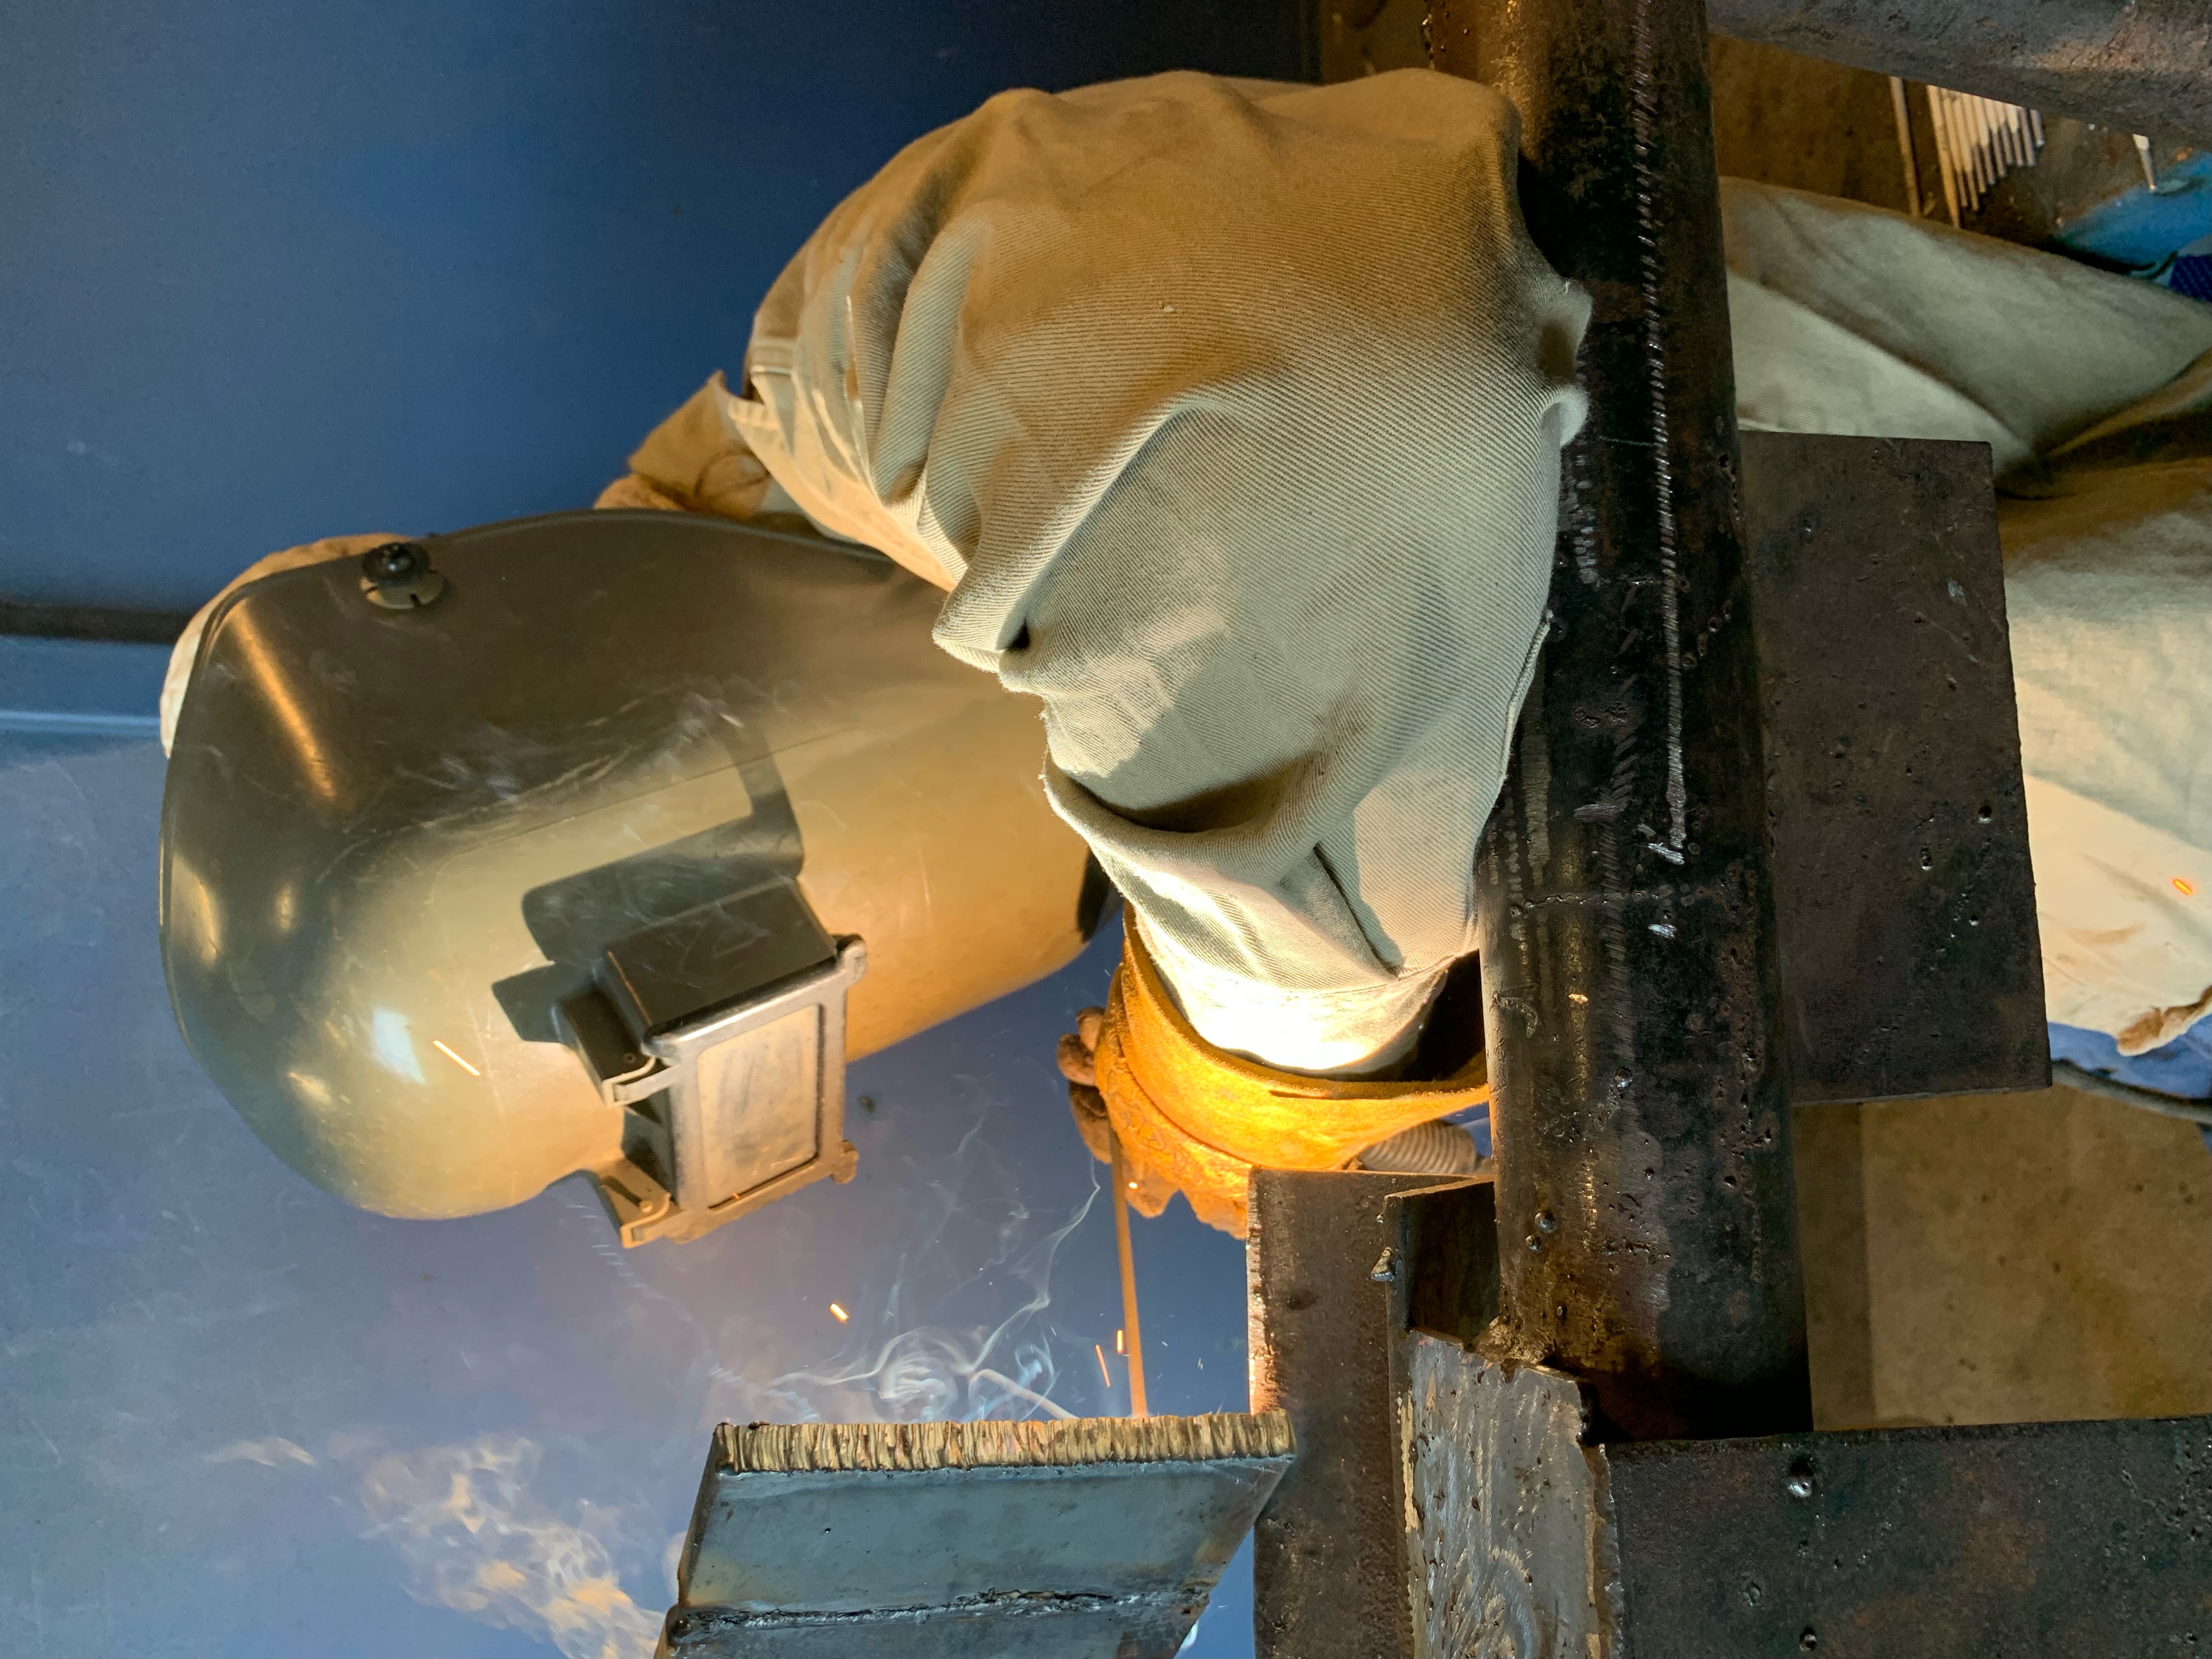 Student welder welding a piece of metal